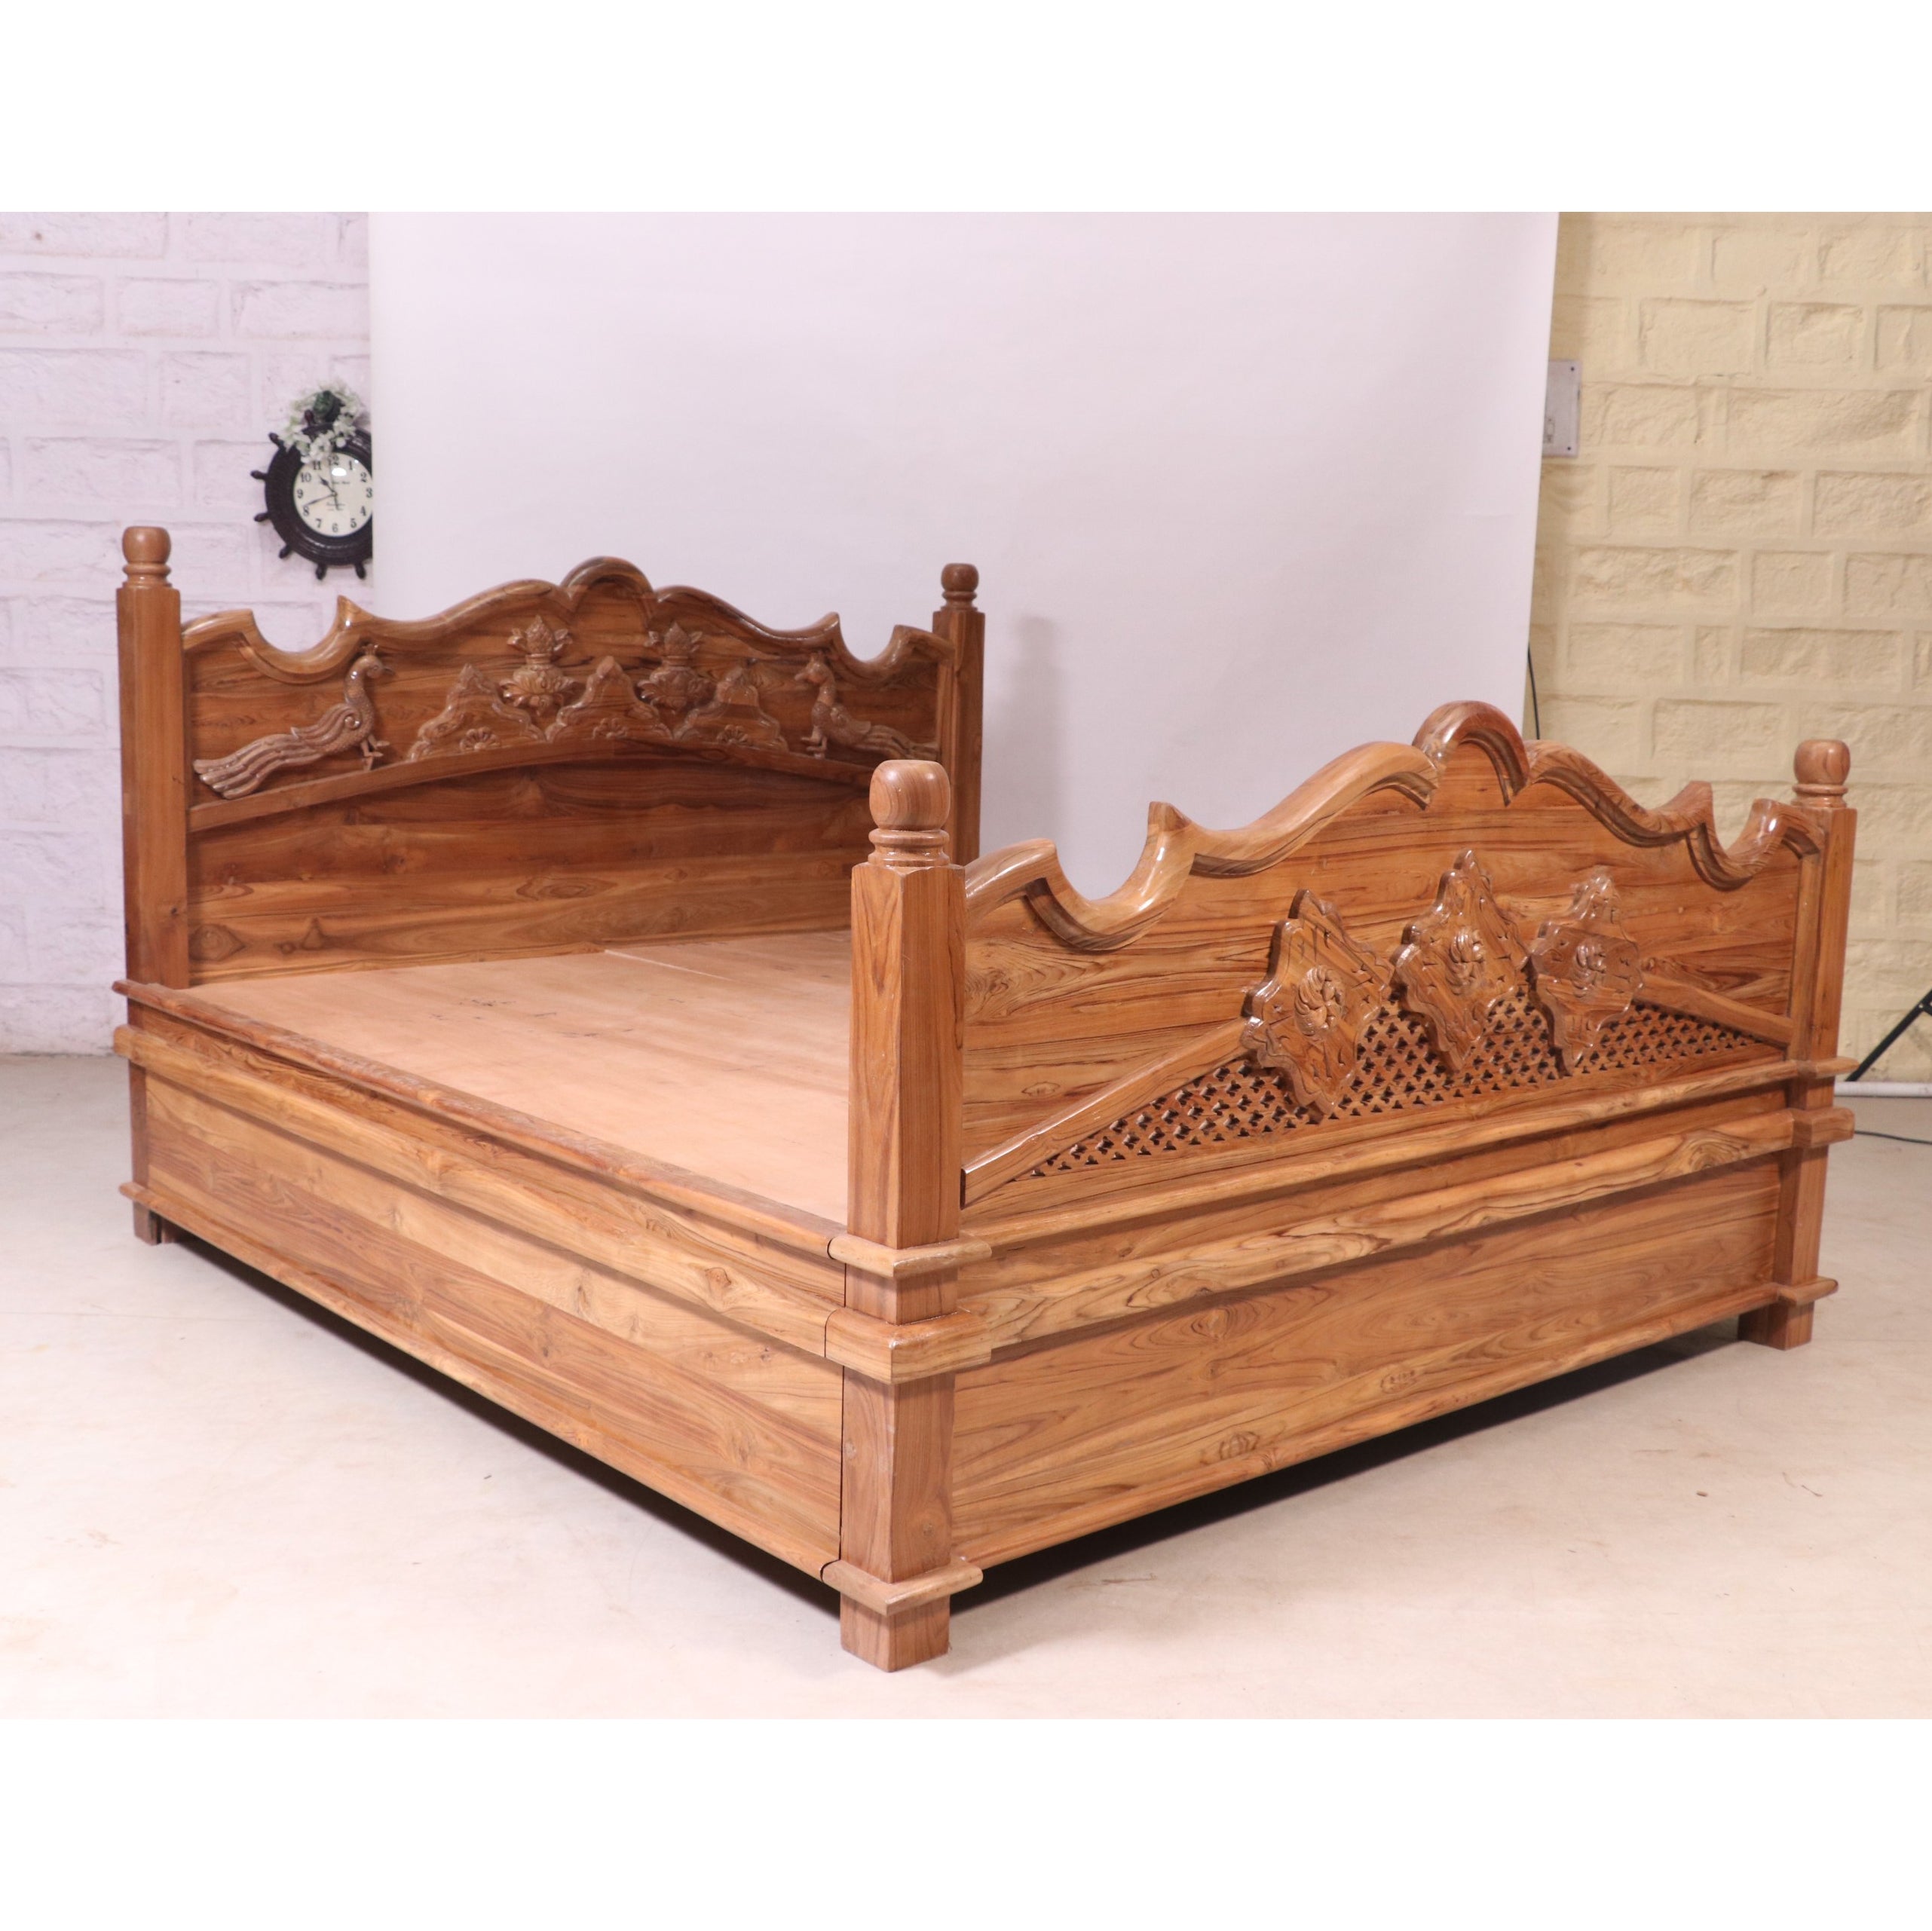 Storage bed Teak Wood Light Brown-Finish Bed Bed